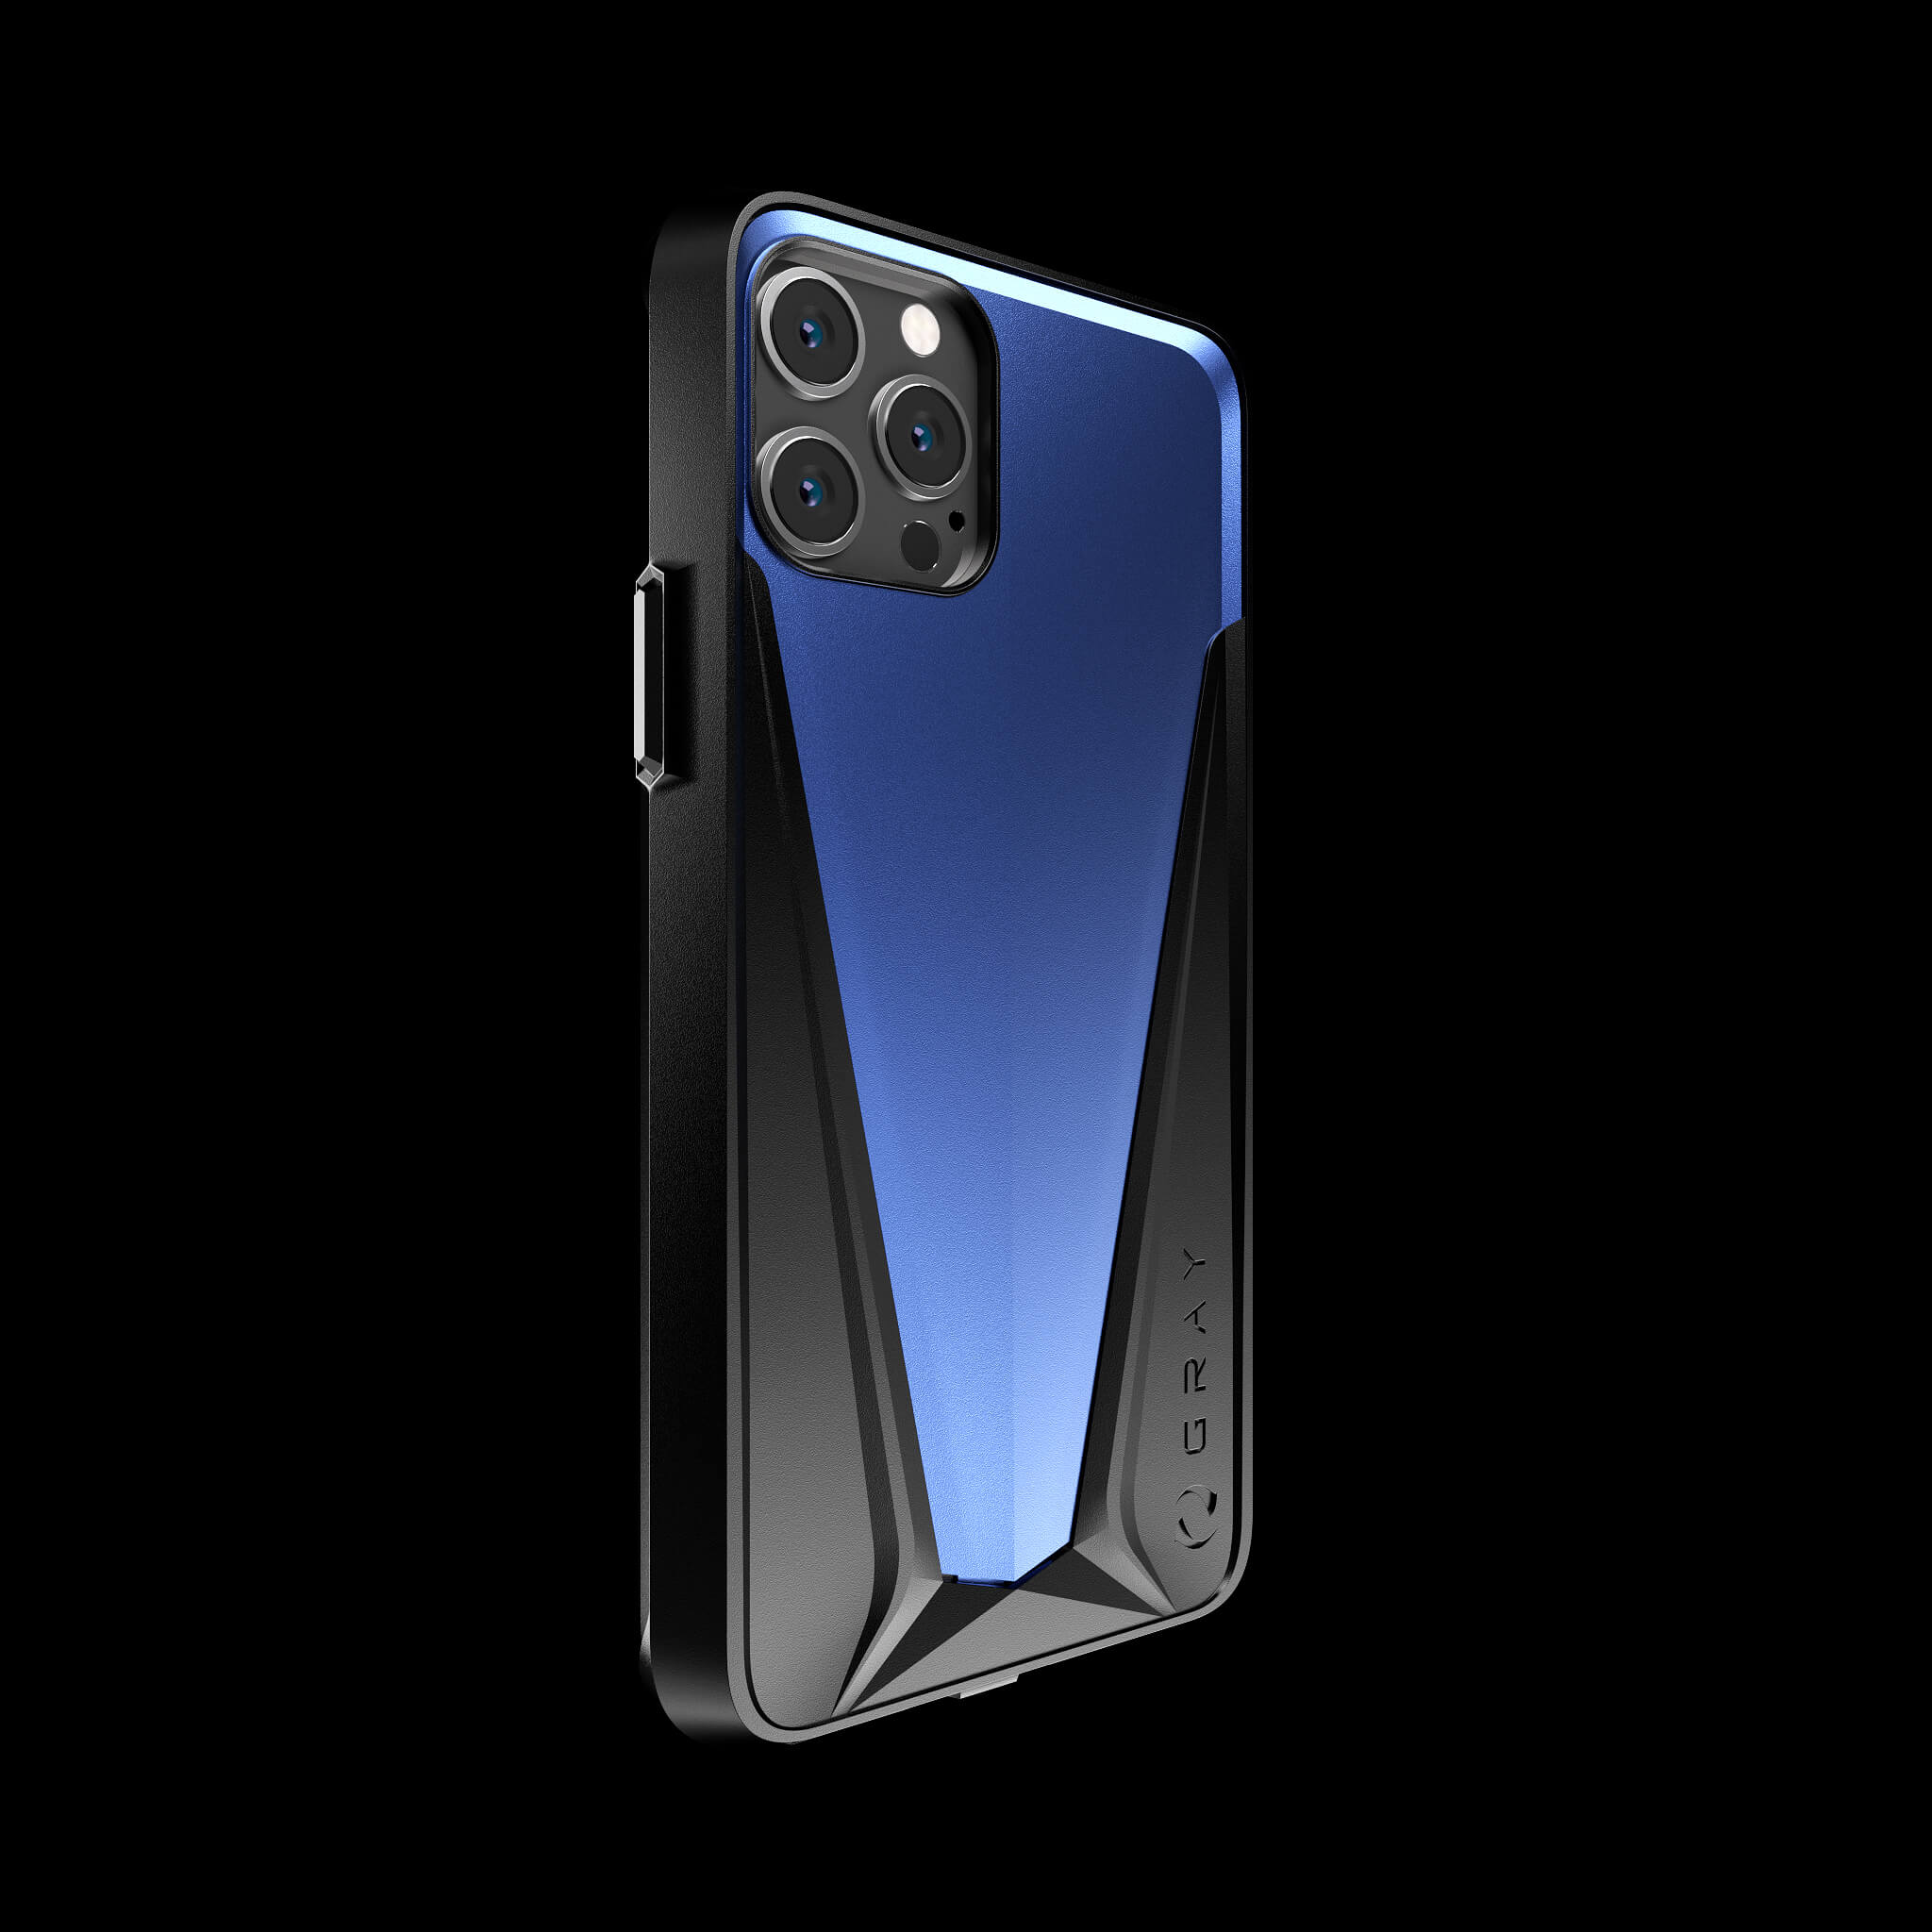 morpheus galactic blue aluminium metal luxury iPhone 12 pro case